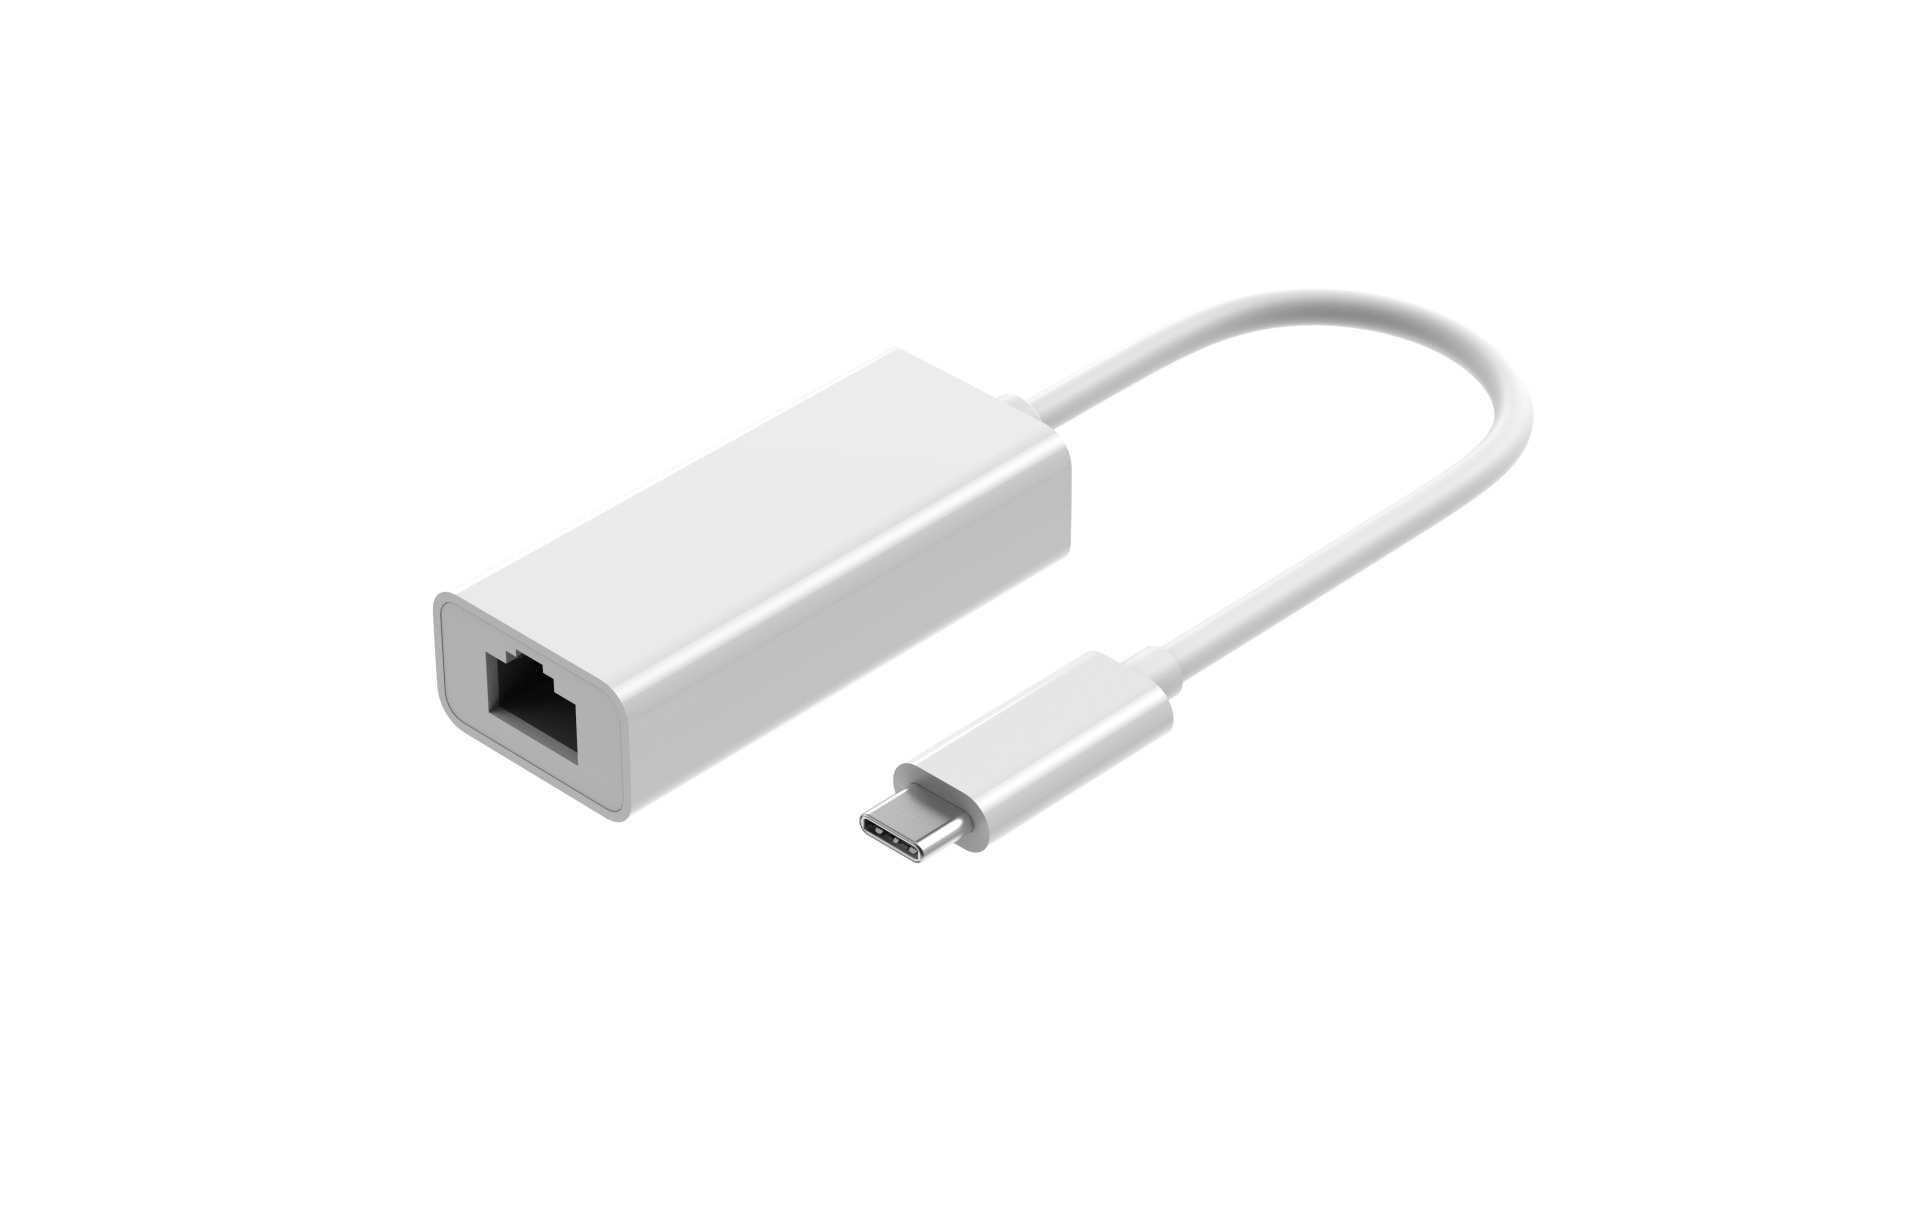 USB Kabel & Adapter online beim Experten kaufen